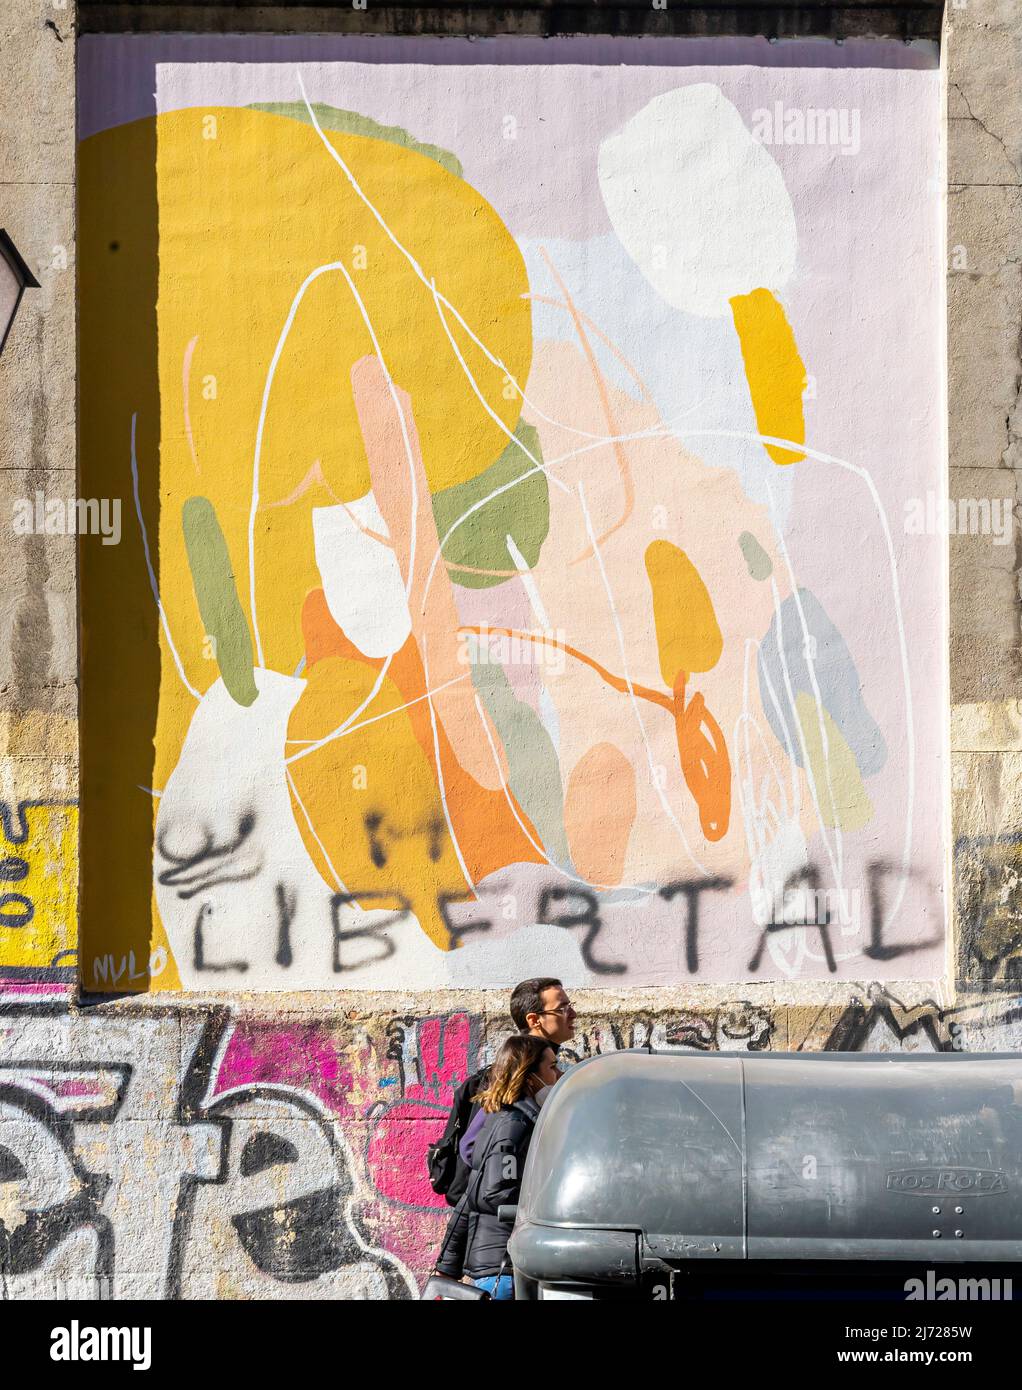 Das Wandbild von Null in Lavapiez, Madrid mit abstrakten Wandarbeiten des Künstlers Null - Muros Tabacalera 2019 Thema - Chance Stockfoto